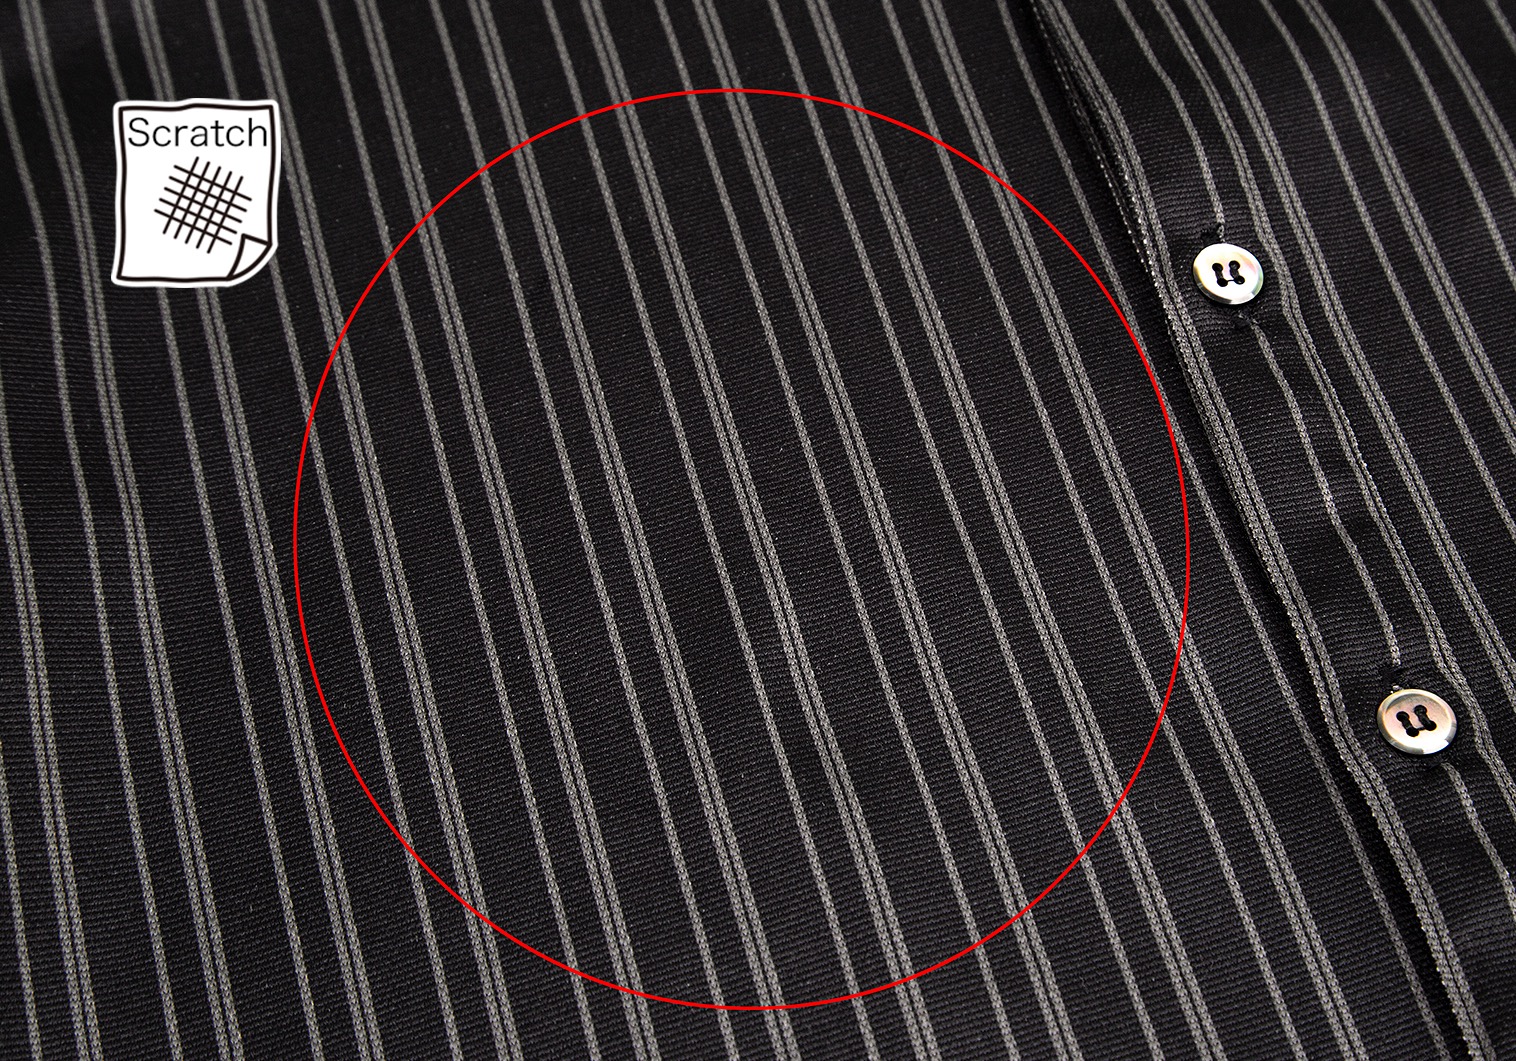 Jean Paul Gaultier HOMME デザインシャツ　ストライプ